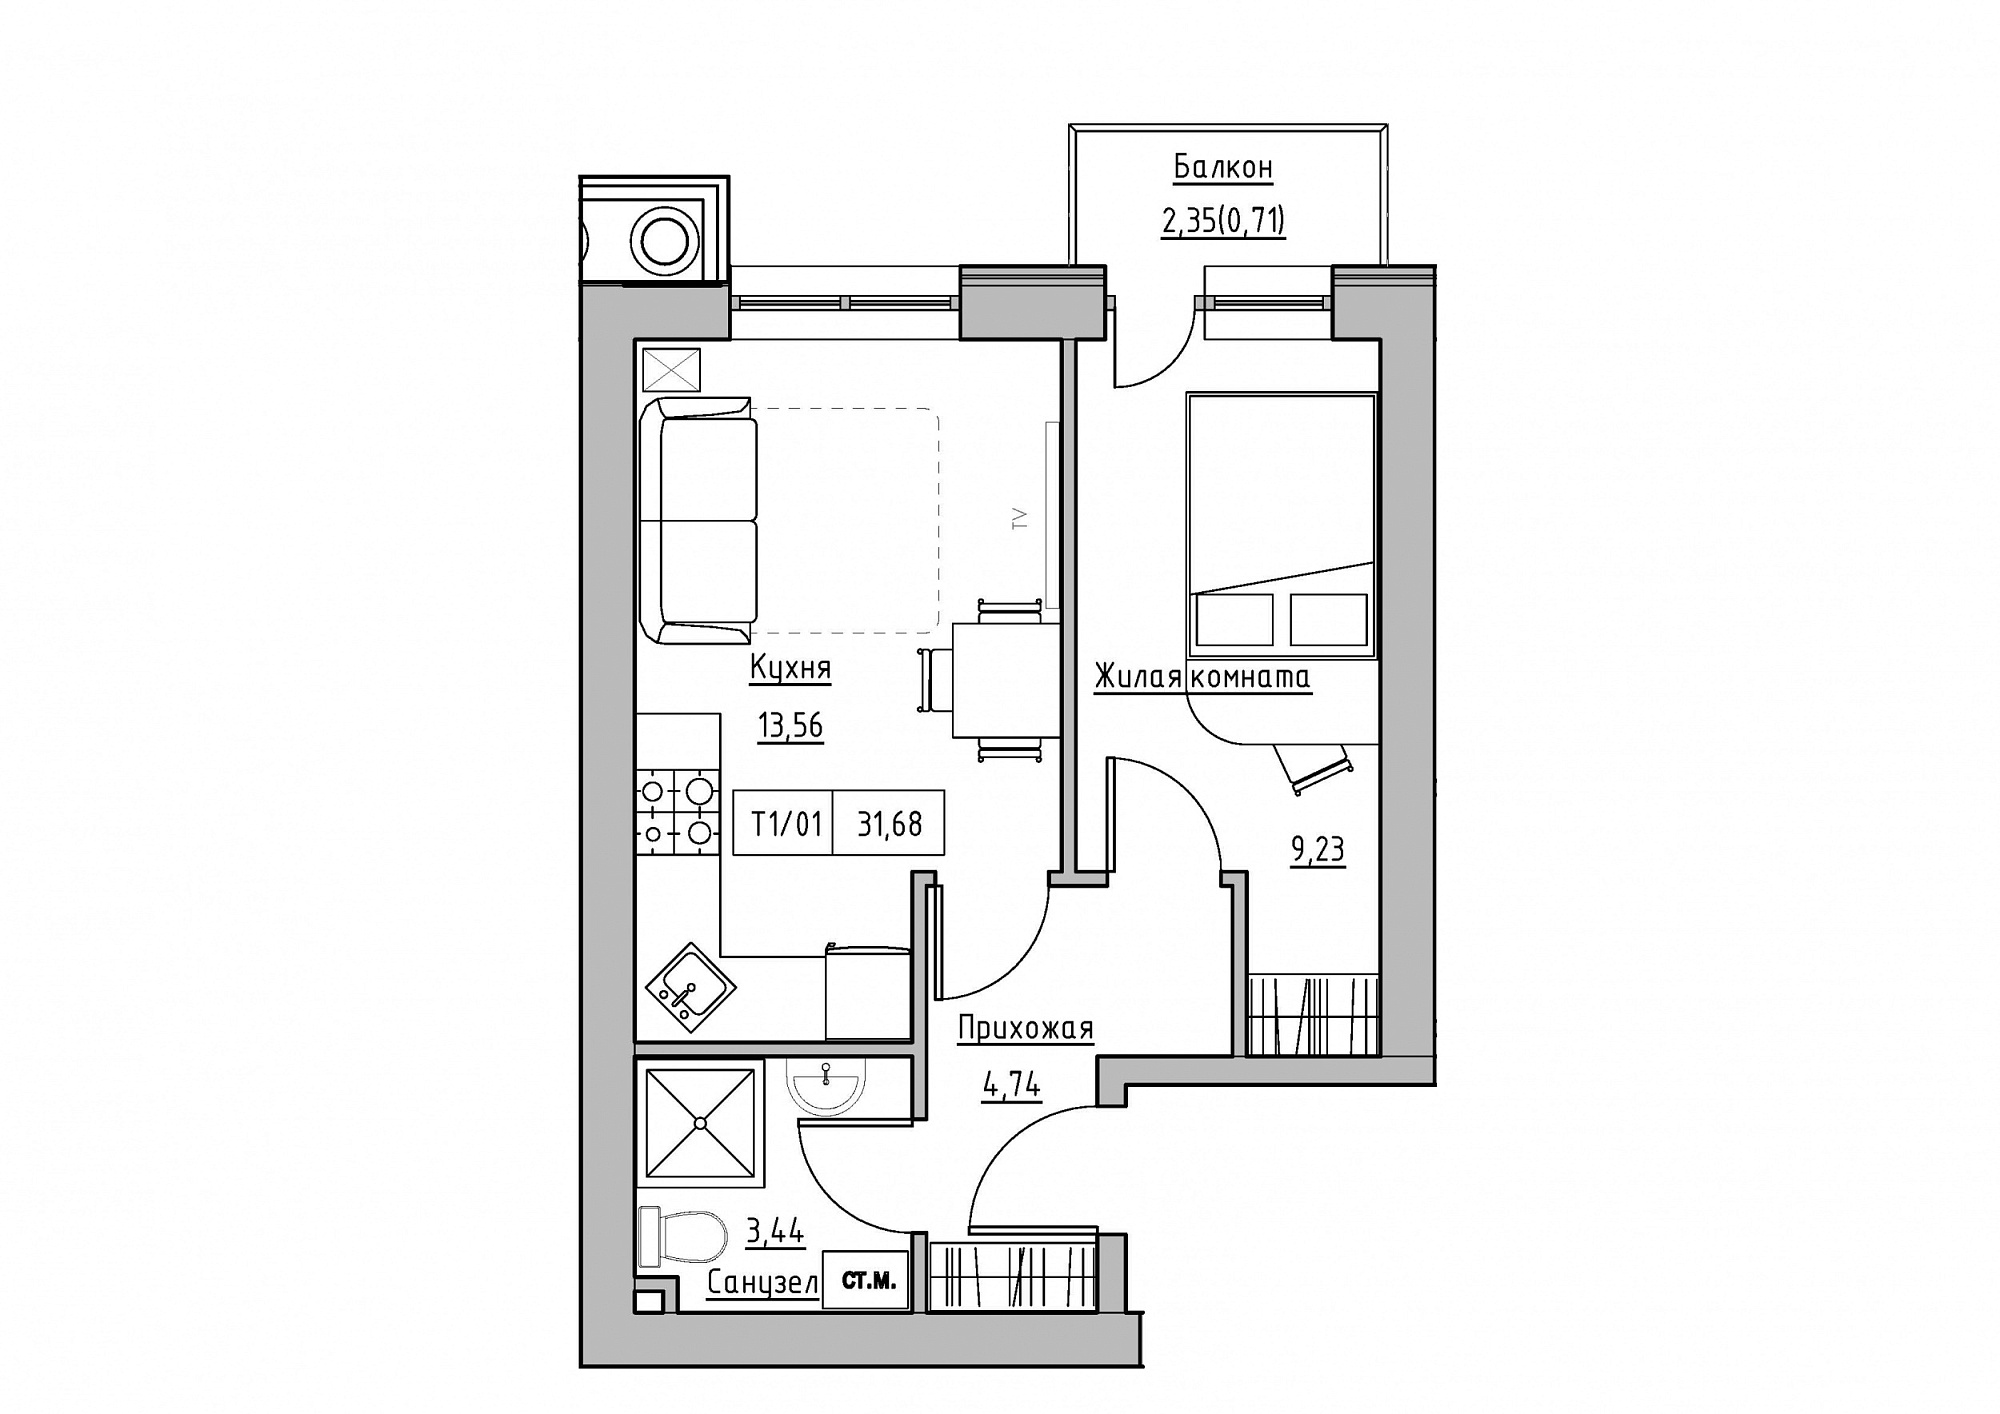 Планировка 1-к квартира площей 31.68м2, KS-011-03/0013.